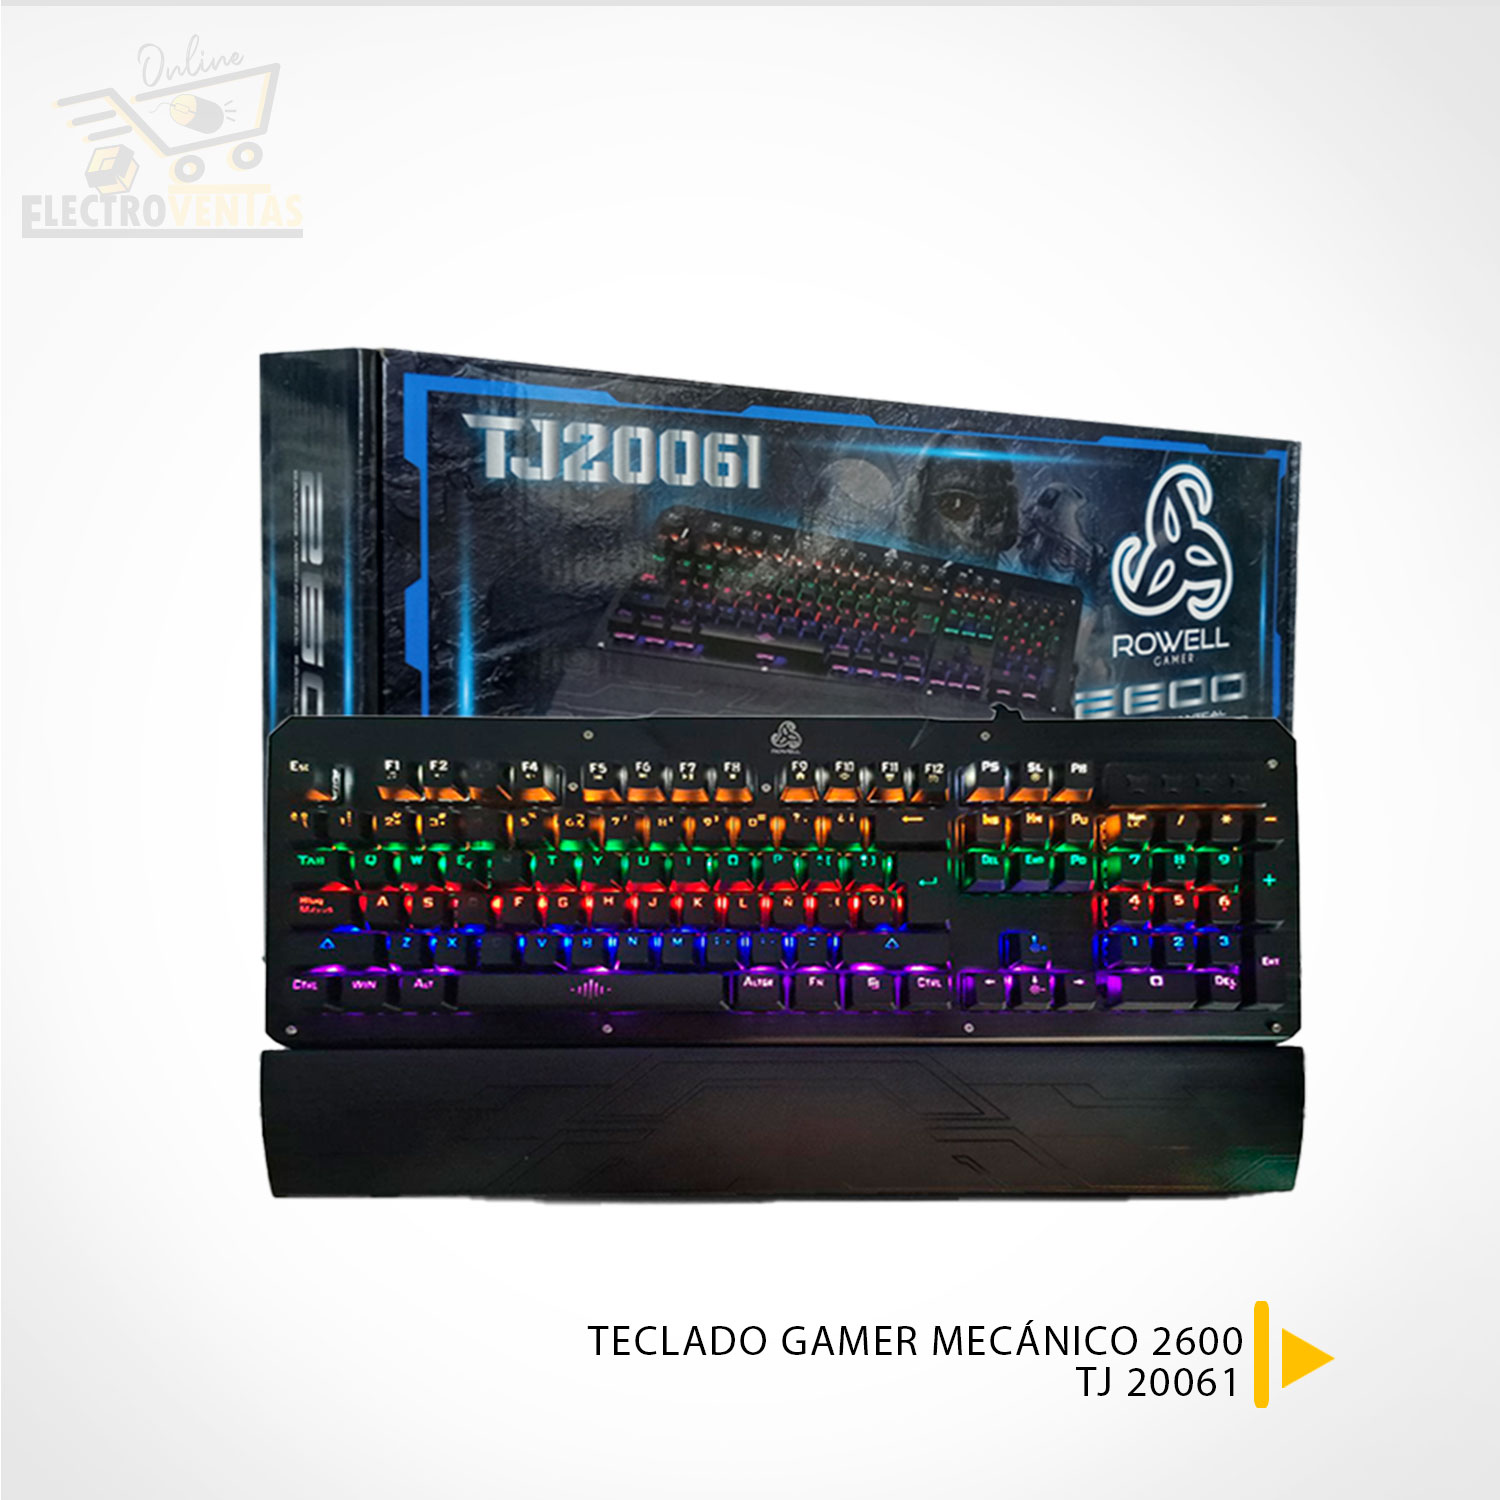 TECLADO GAMER MECÁNICO ROWELL 87KEY (TJ 200601) 